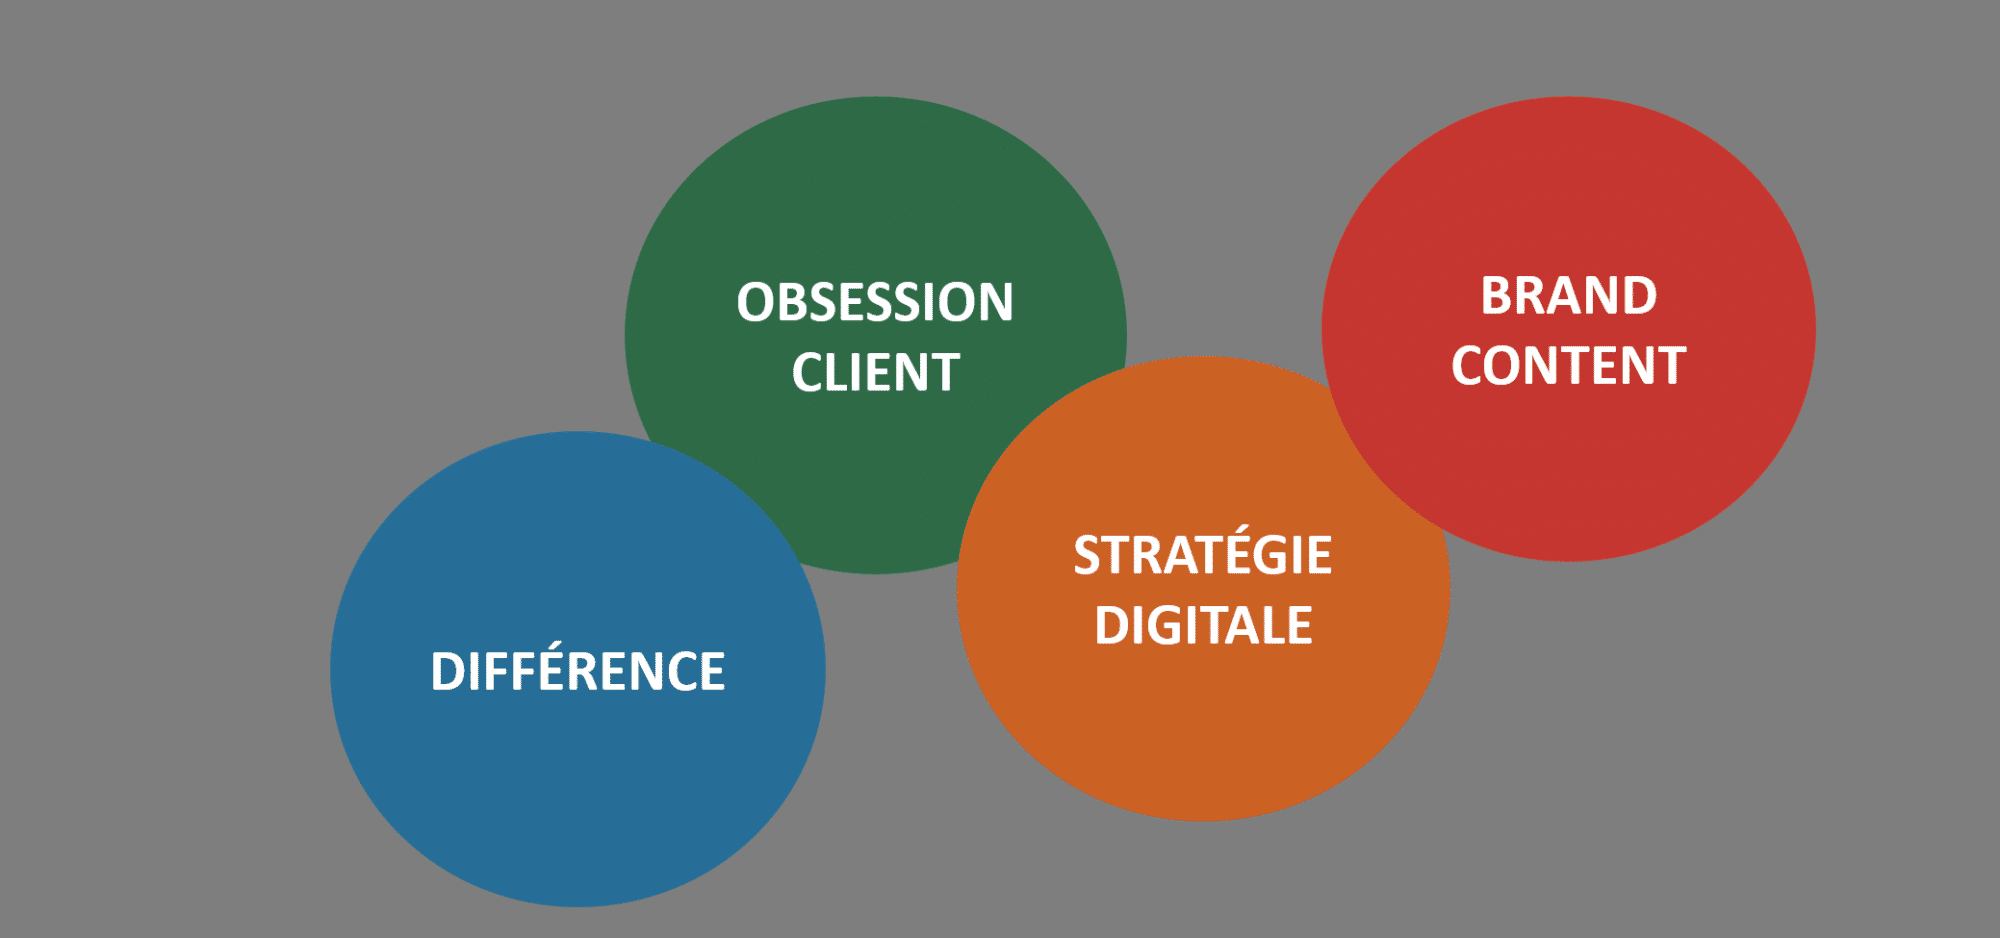 La différence, l'obsession client, la stratégie digitale, le brand content